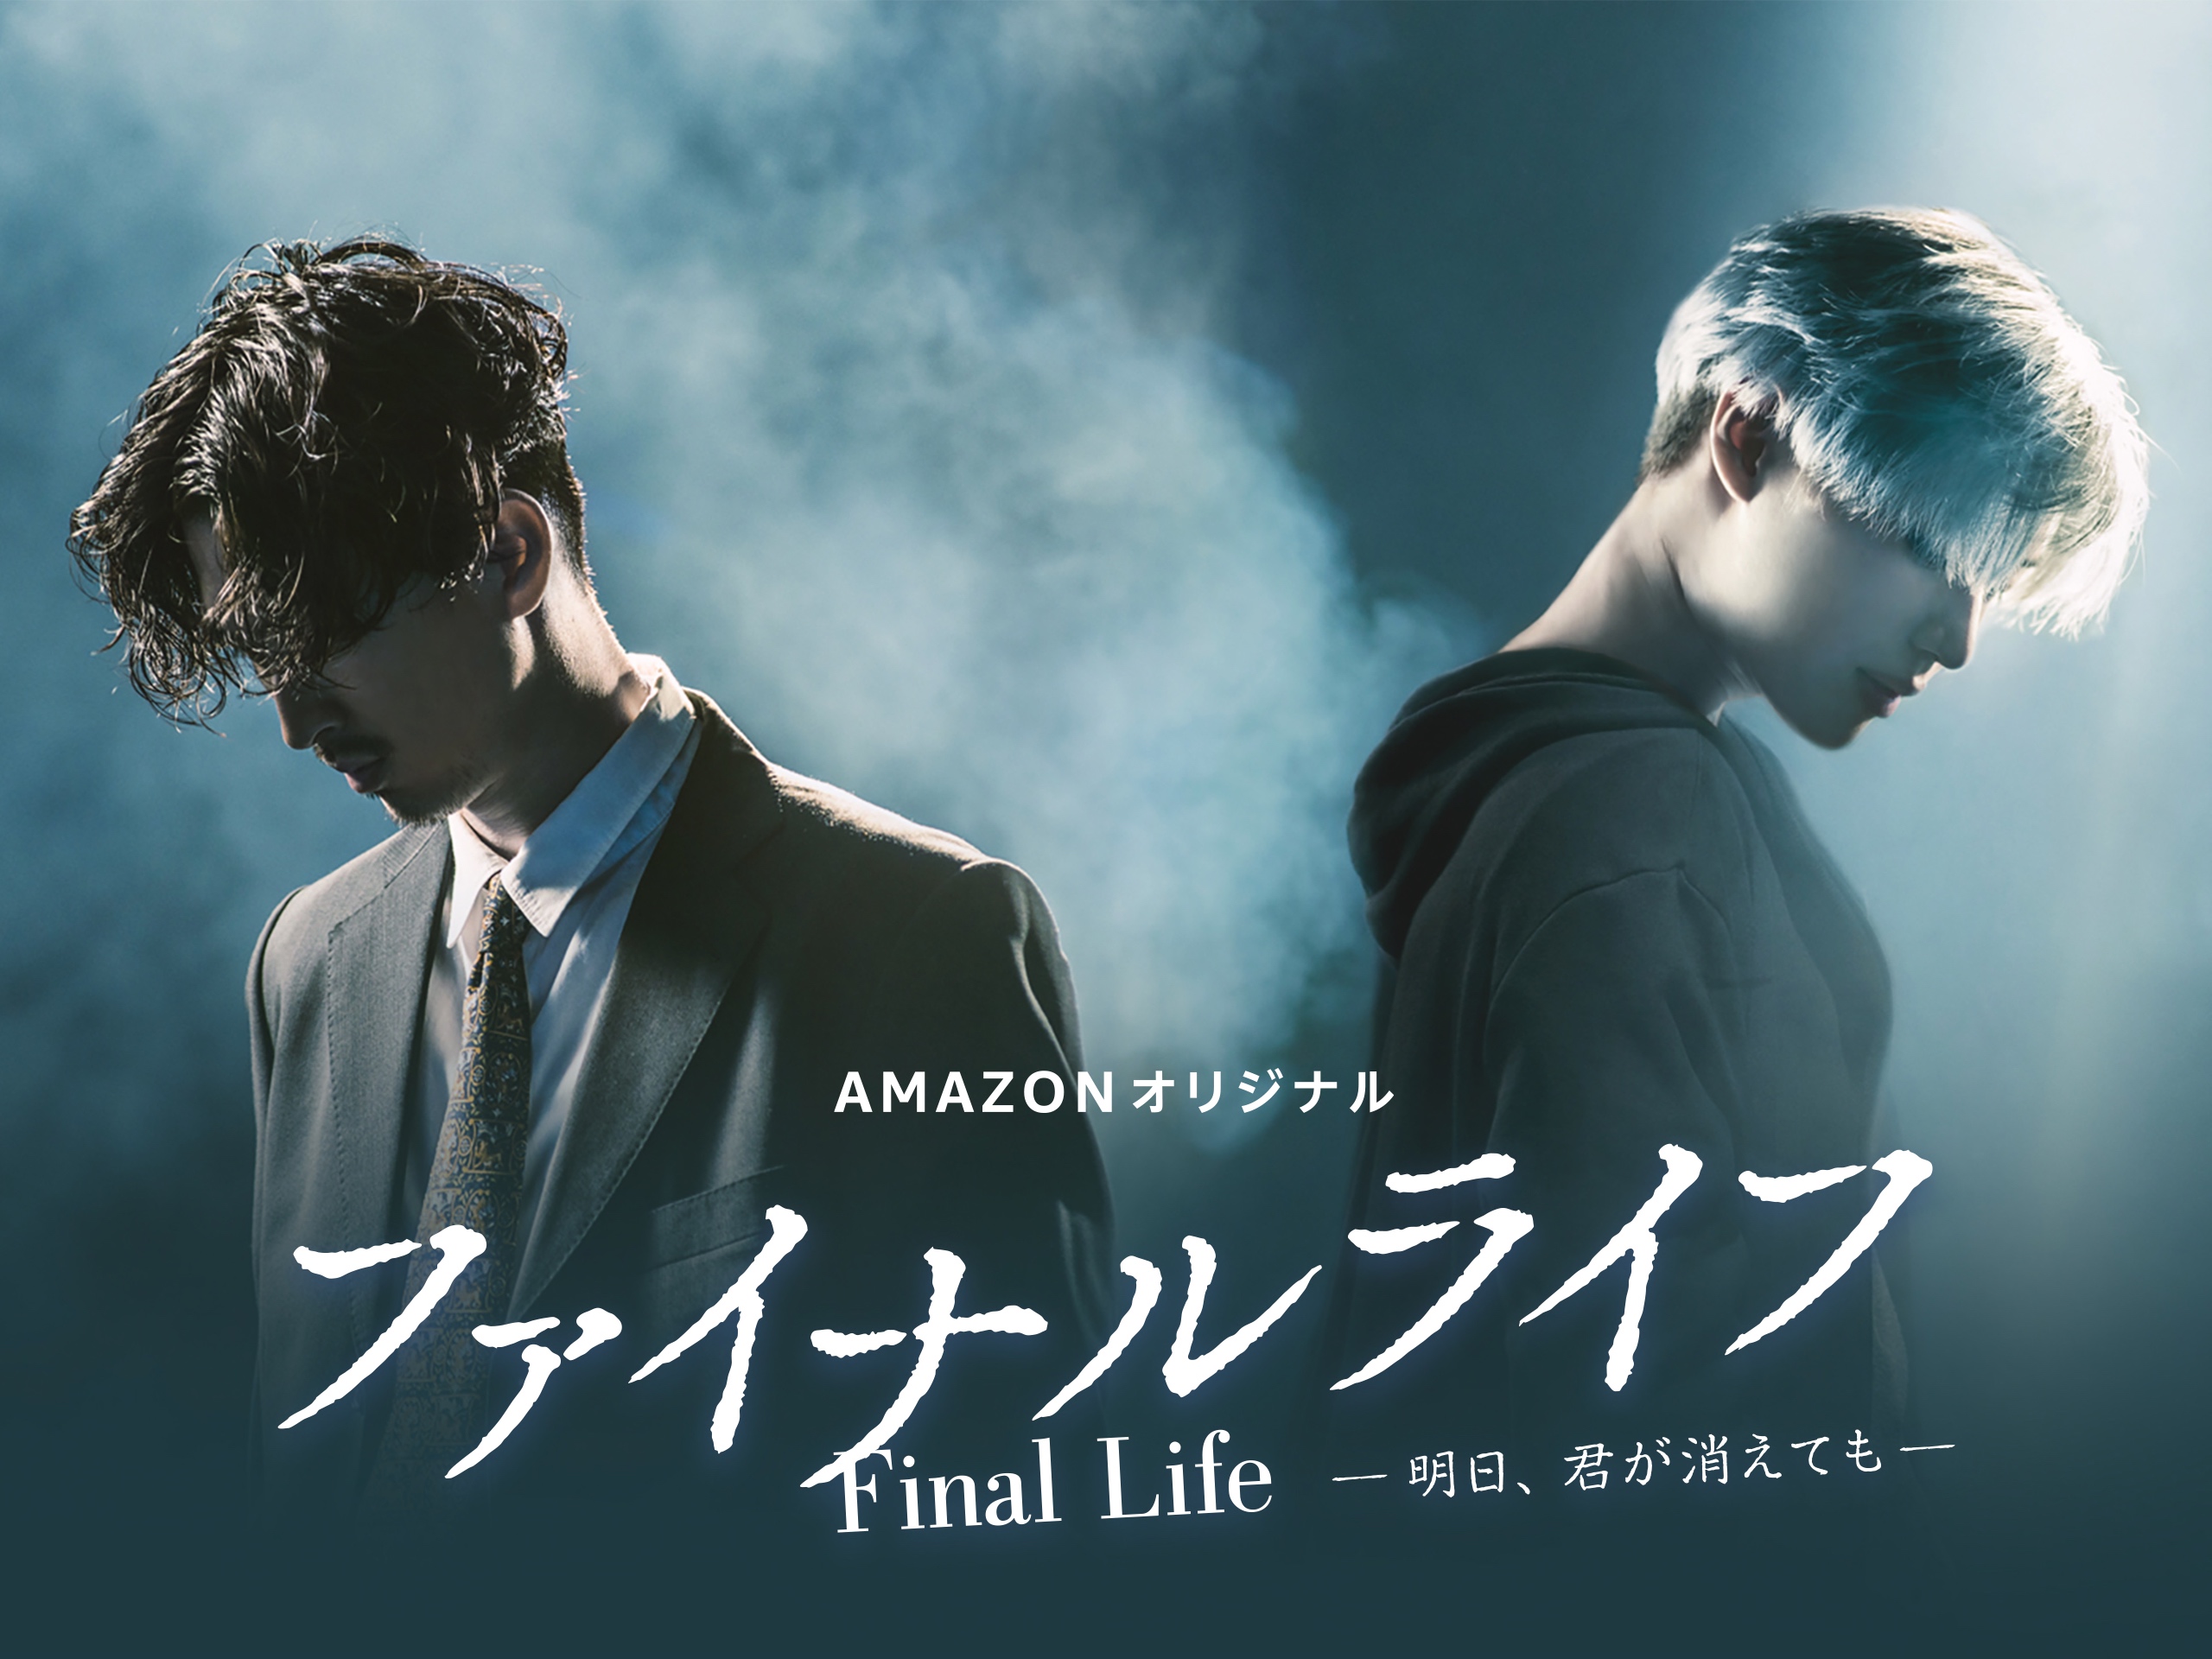 amazon日本オリジナルの最新作は松田翔太 テミン shinee 初共演のドラマシリーズ ファイナルライフ 明日 君が消えても アマゾン ジャパン合同会社のプレスリリース